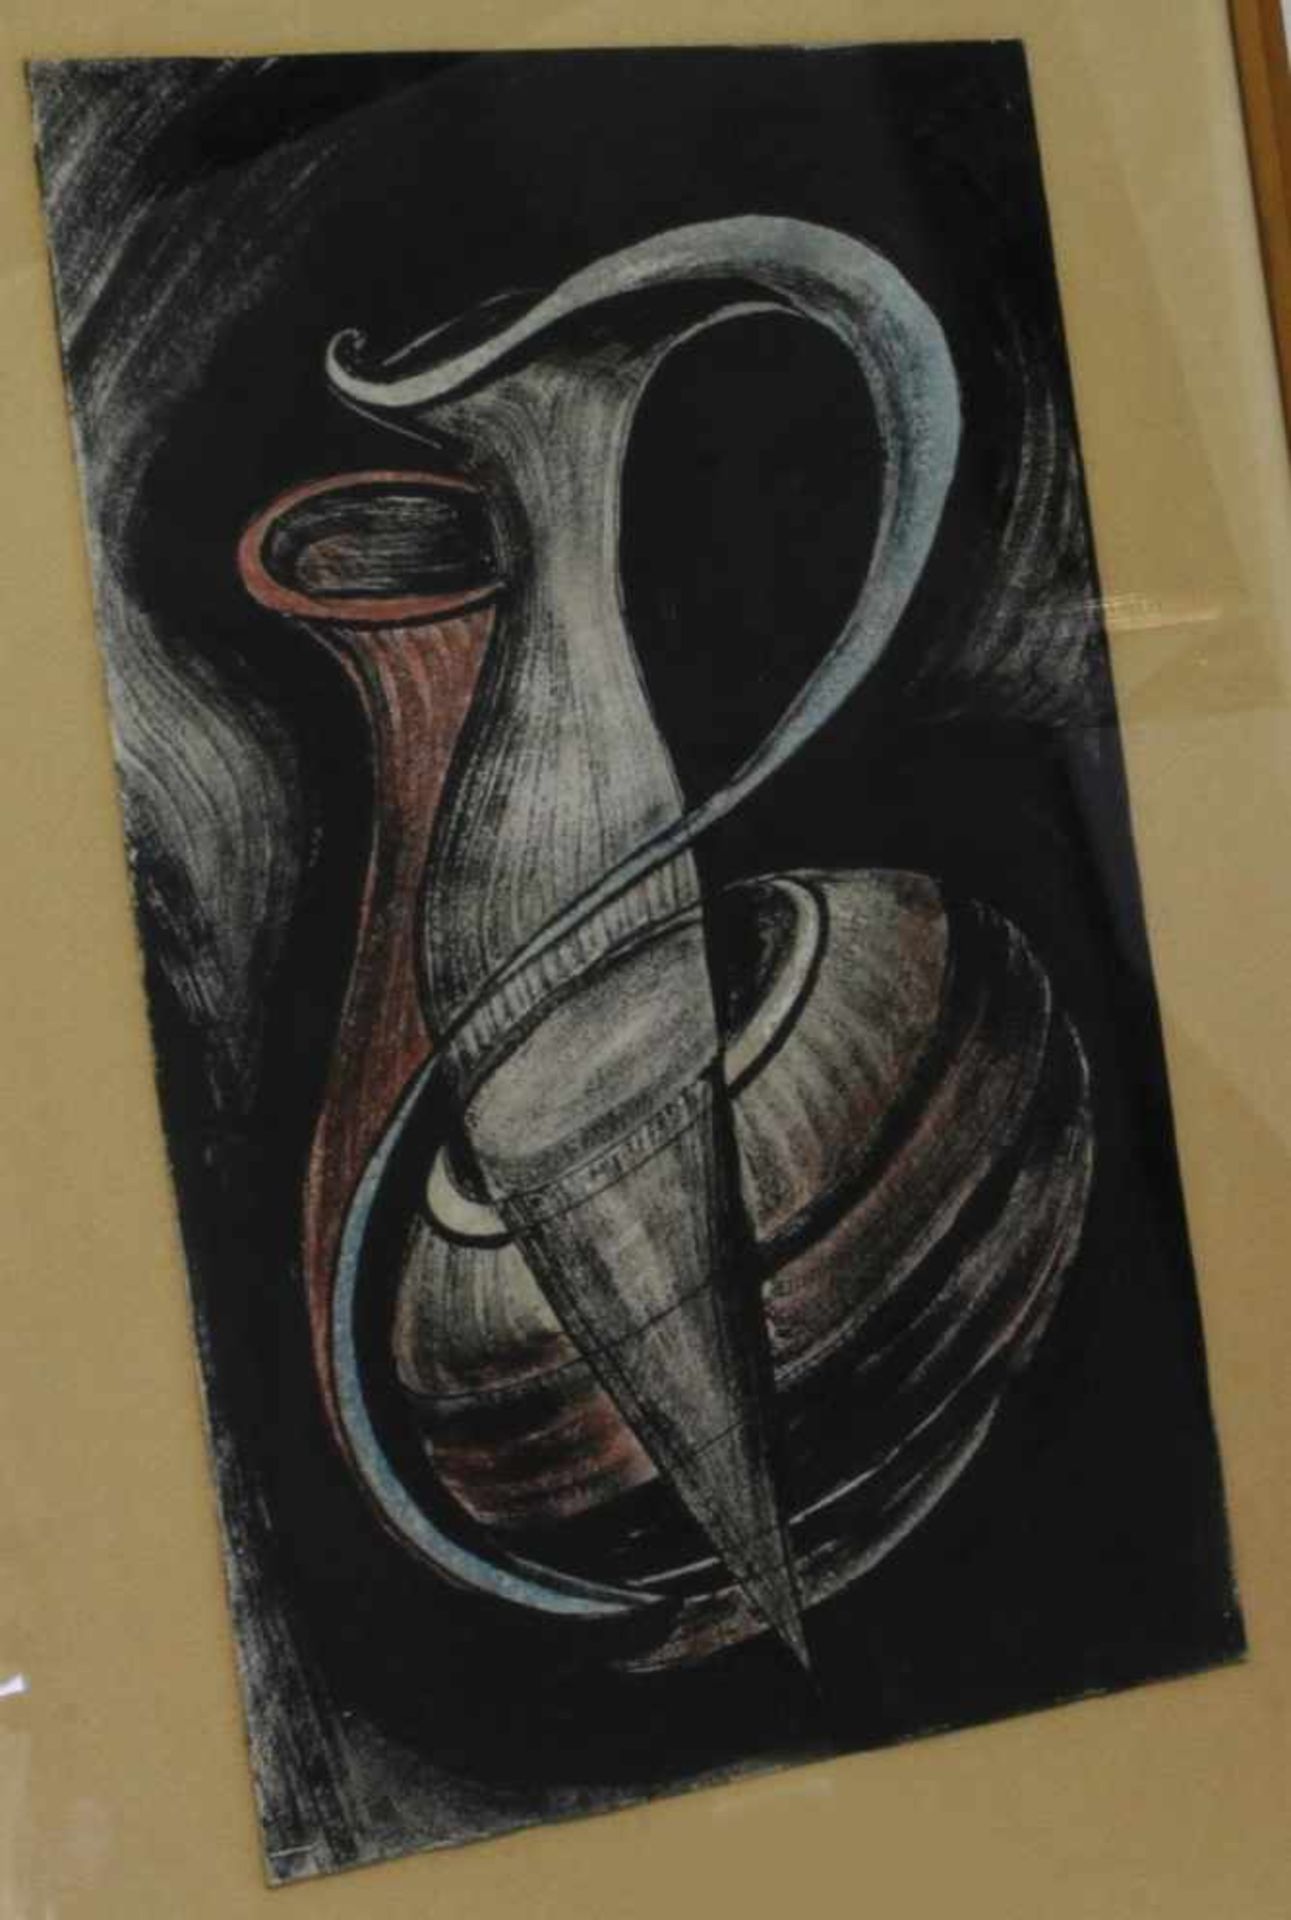 Anonymer Künstler, zeitgenössisch. "Vasen", Mischtechnik, 33 x 21 cm